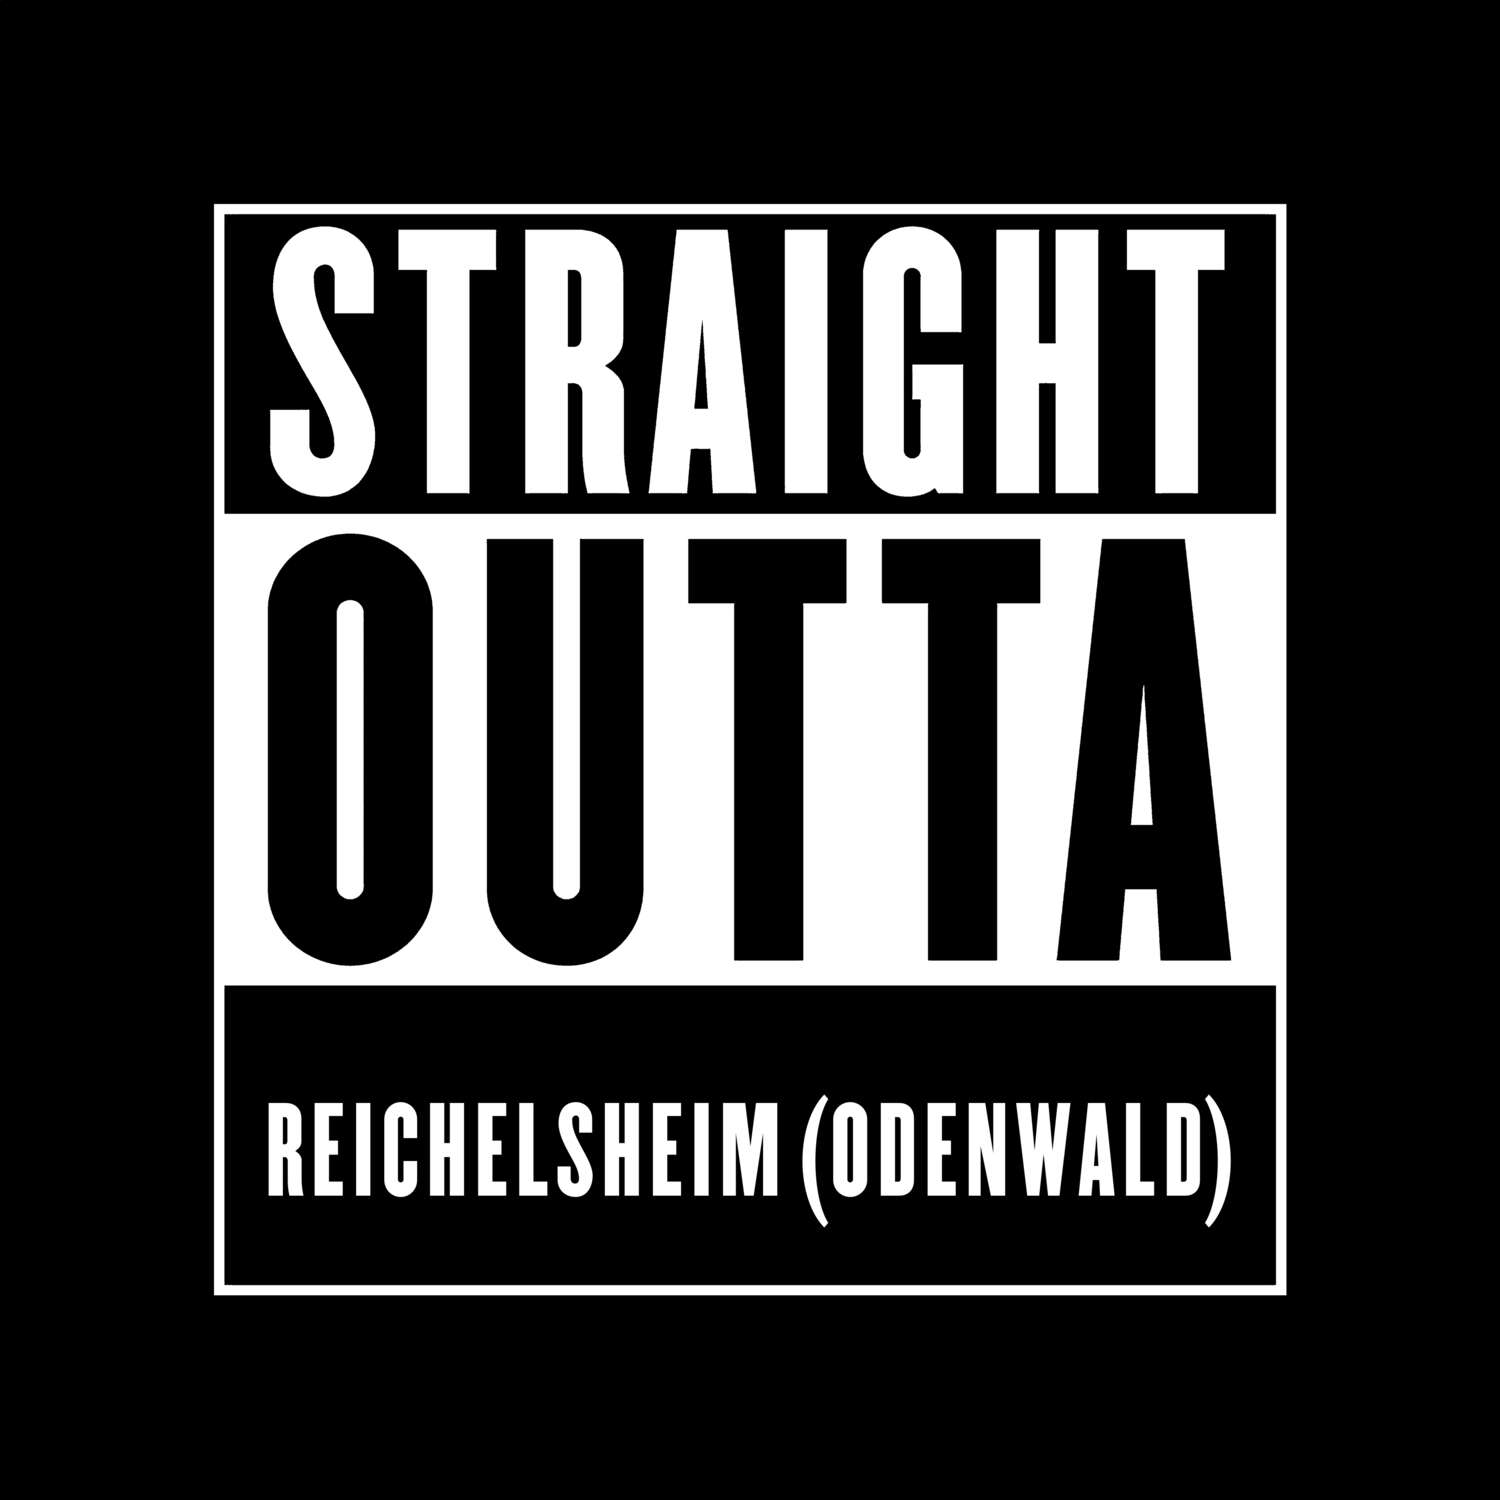 Reichelsheim (Odenwald) T-Shirt »Straight Outta«